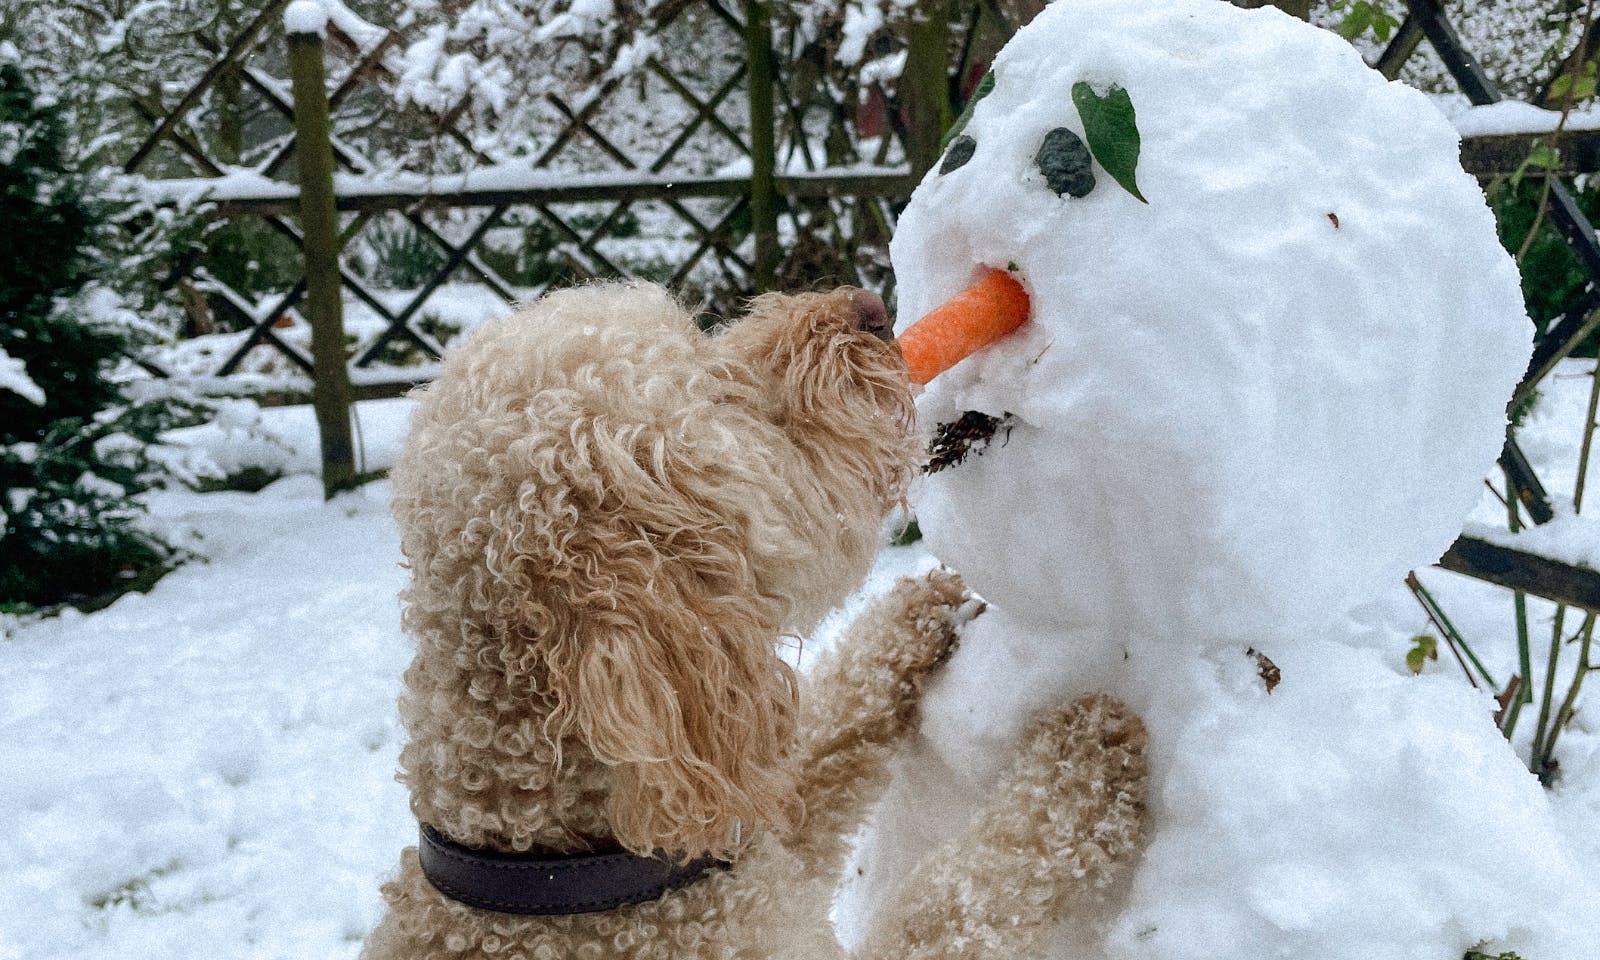 Hundepfoten mÃ¼ssen im Winter bei KÃ¤lte besonders gepflegt werden